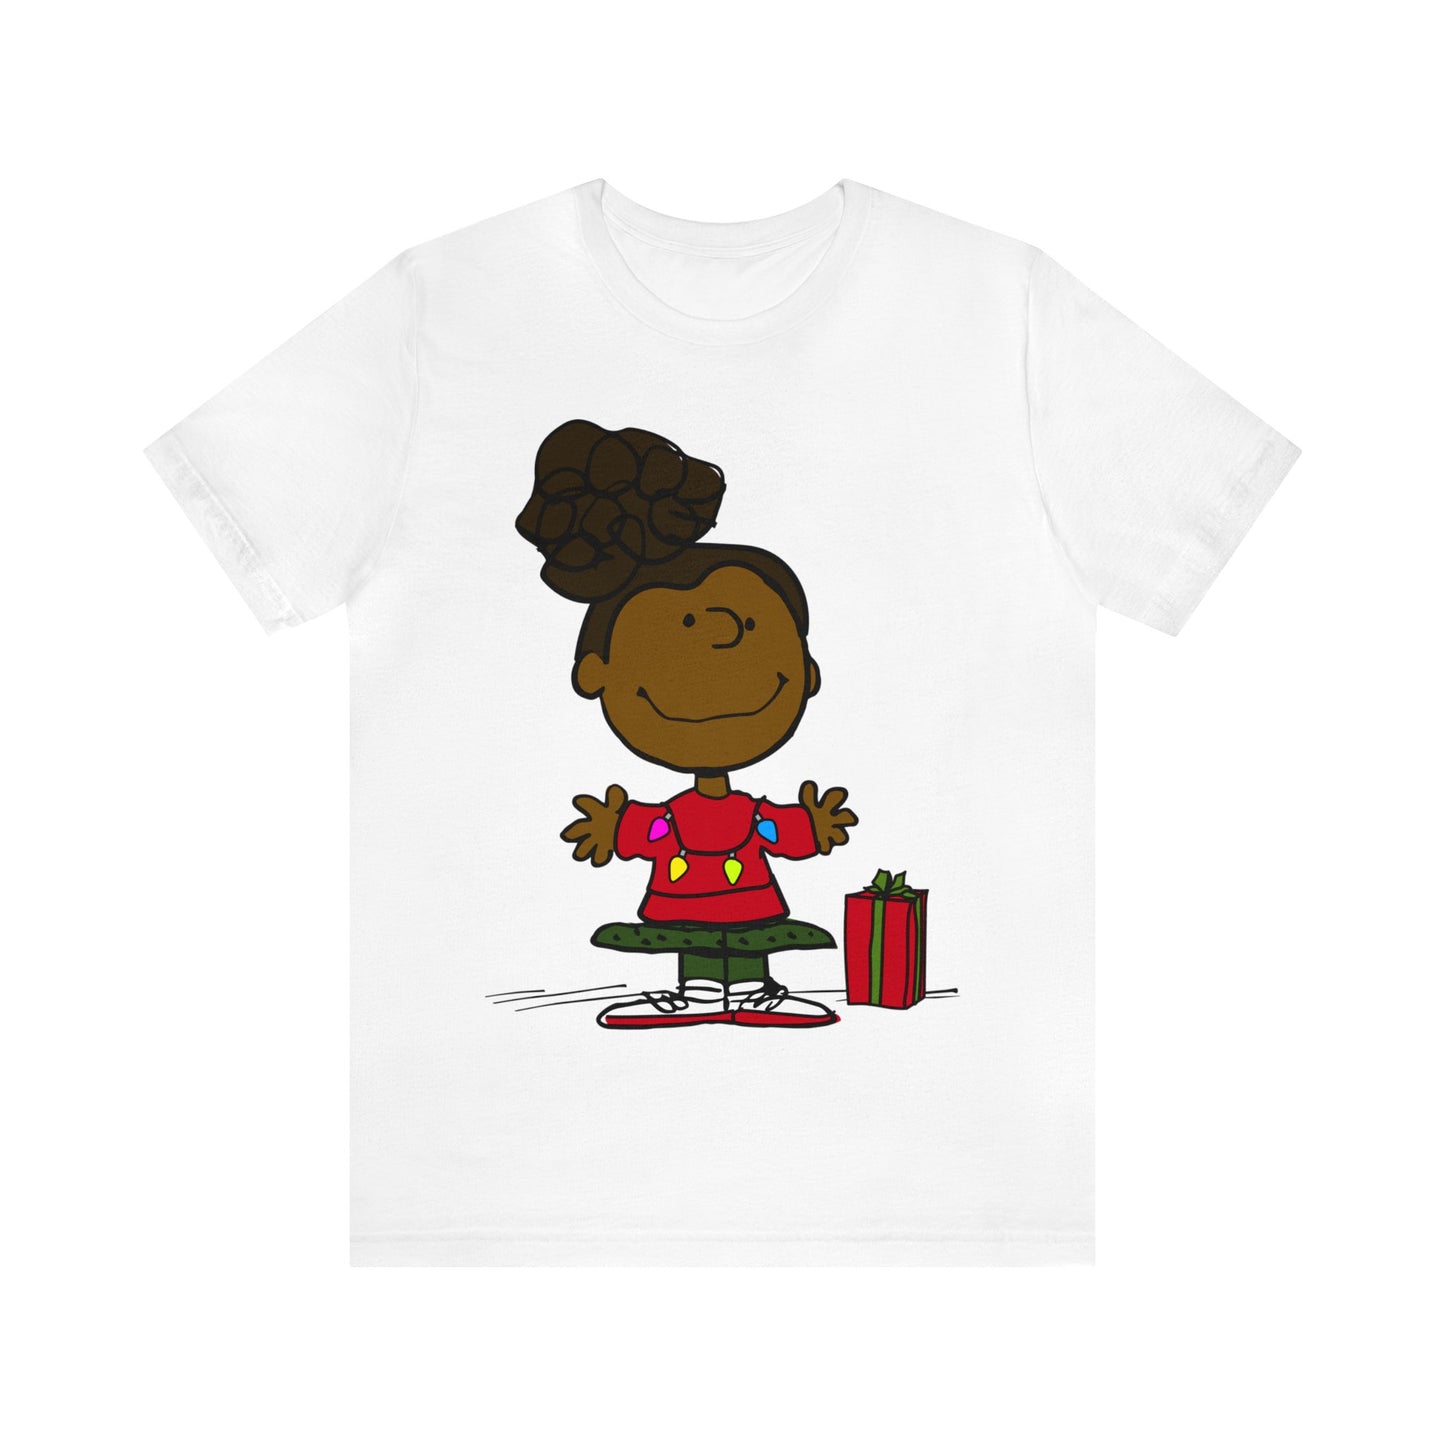 Black Charlie Brown Characters Christmas Tee Shirt